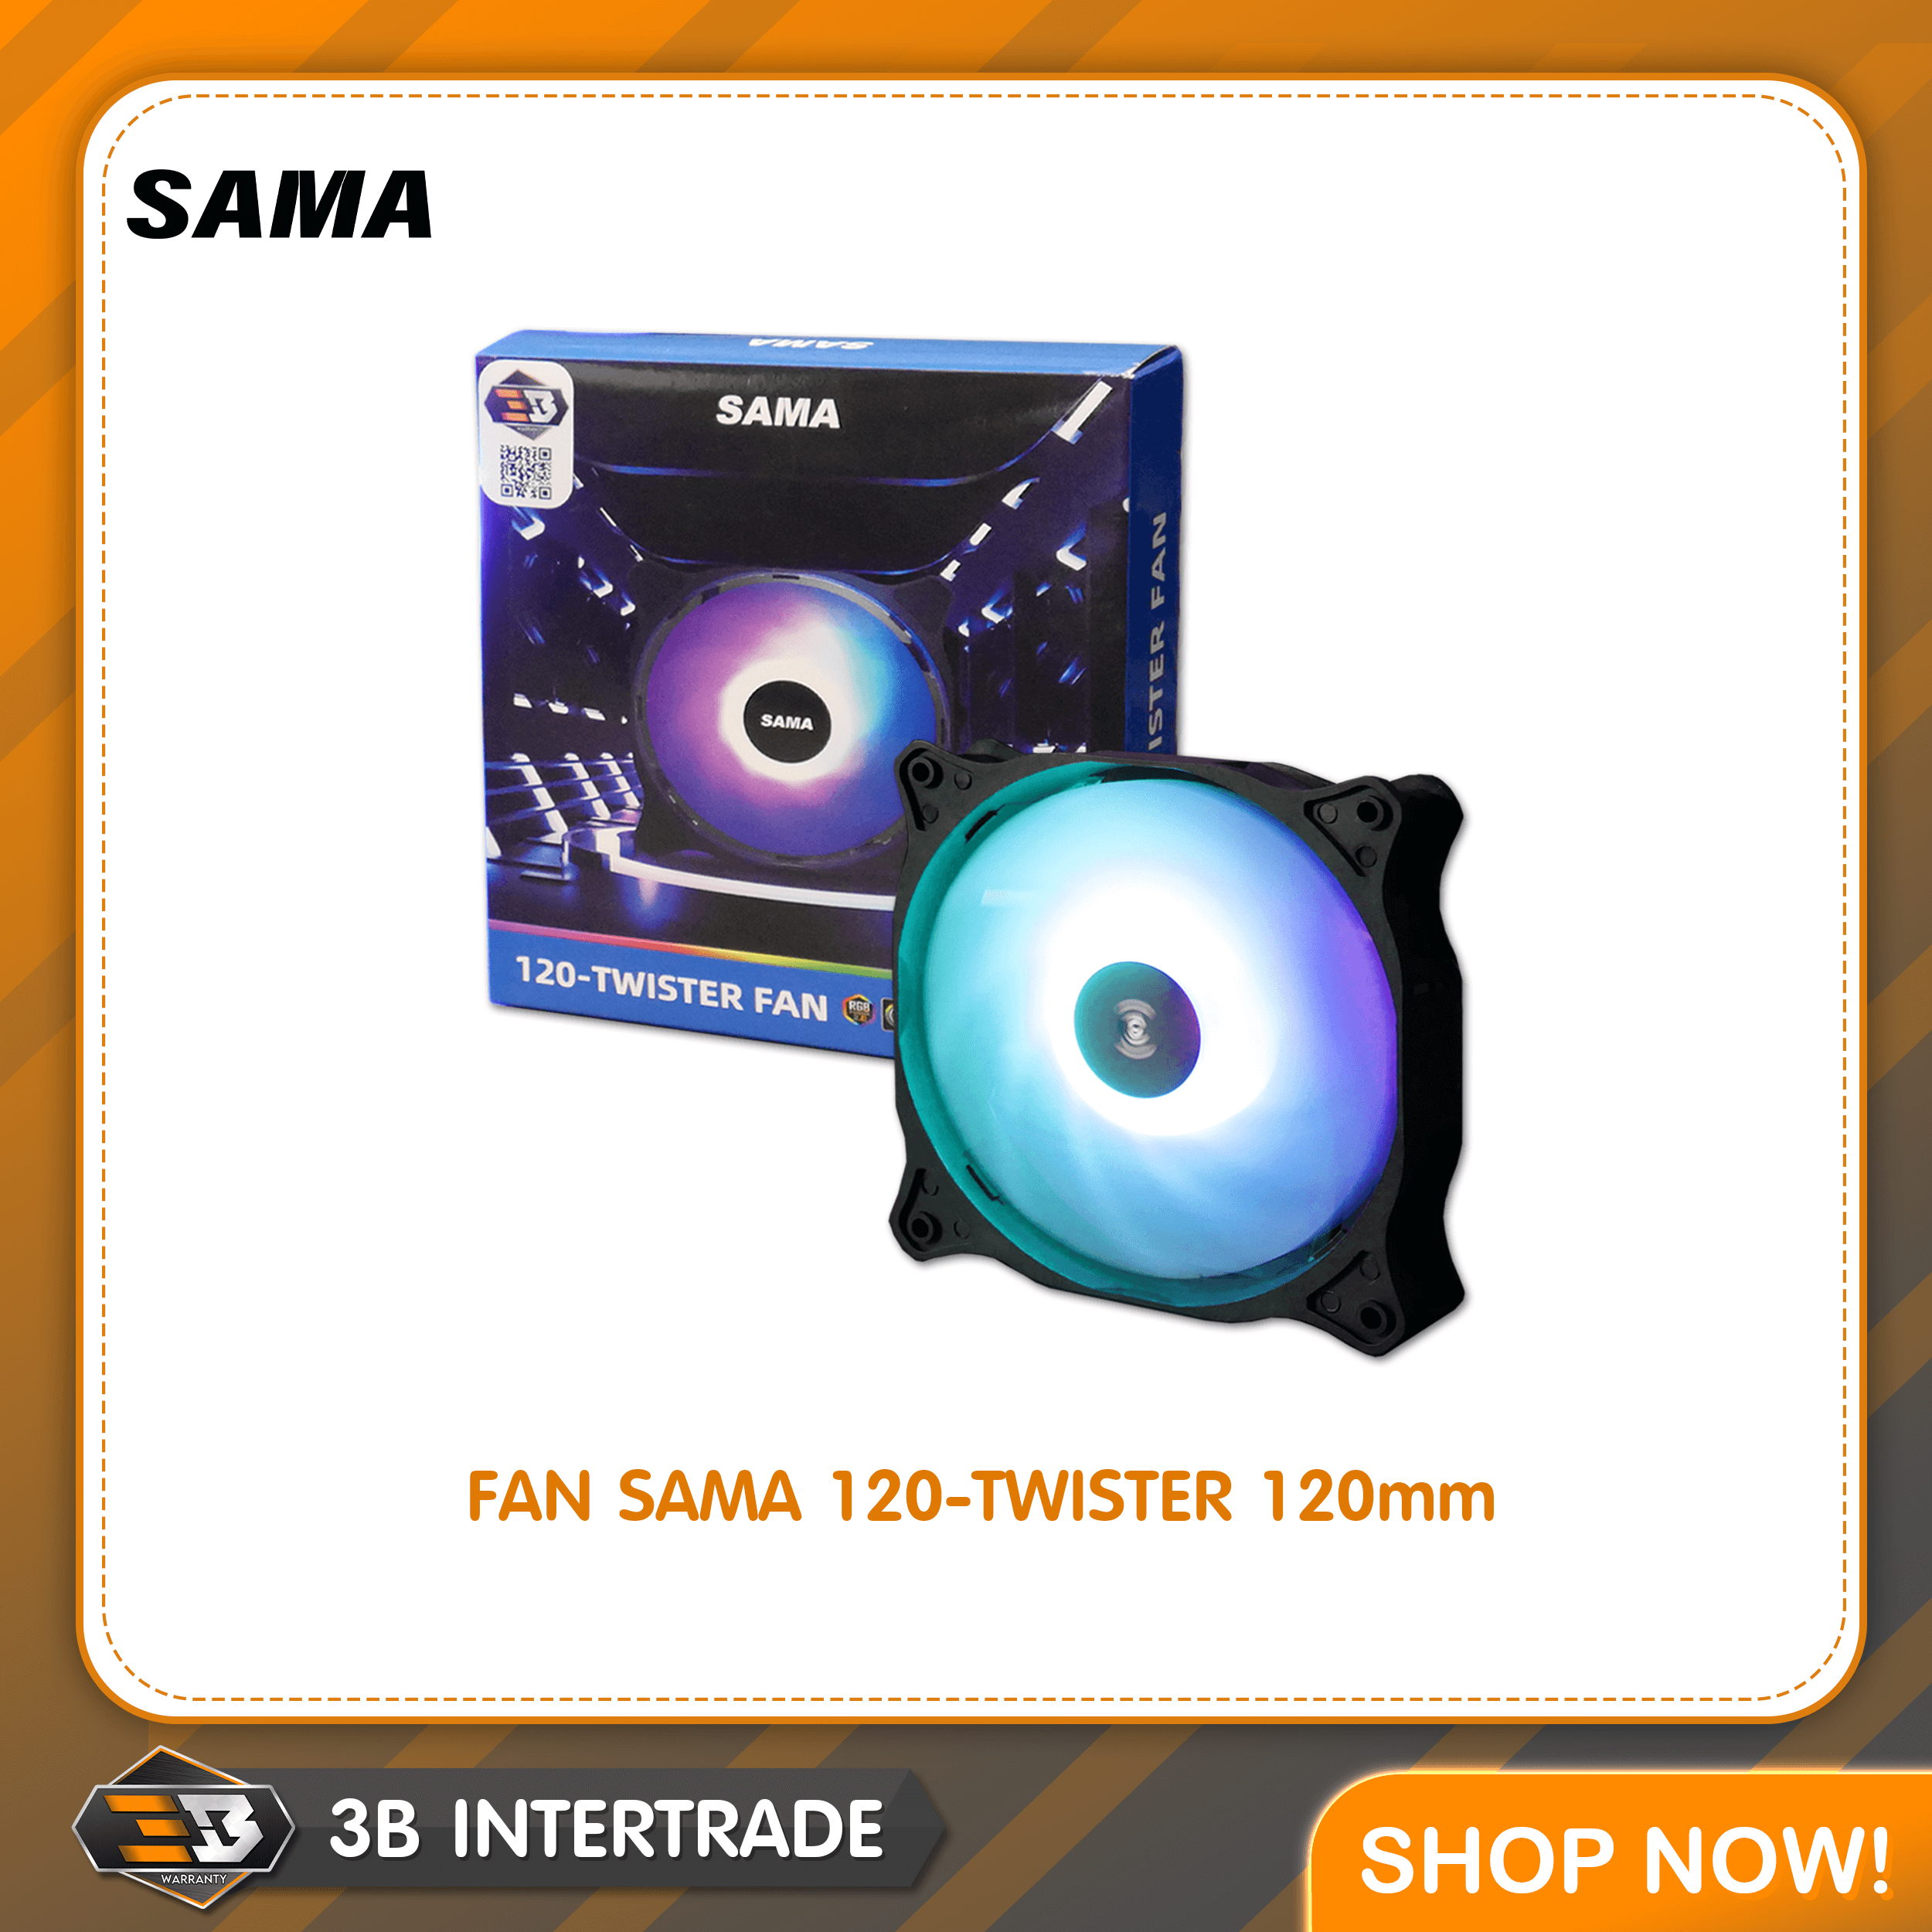 FAN SAMA 120-TWISTER